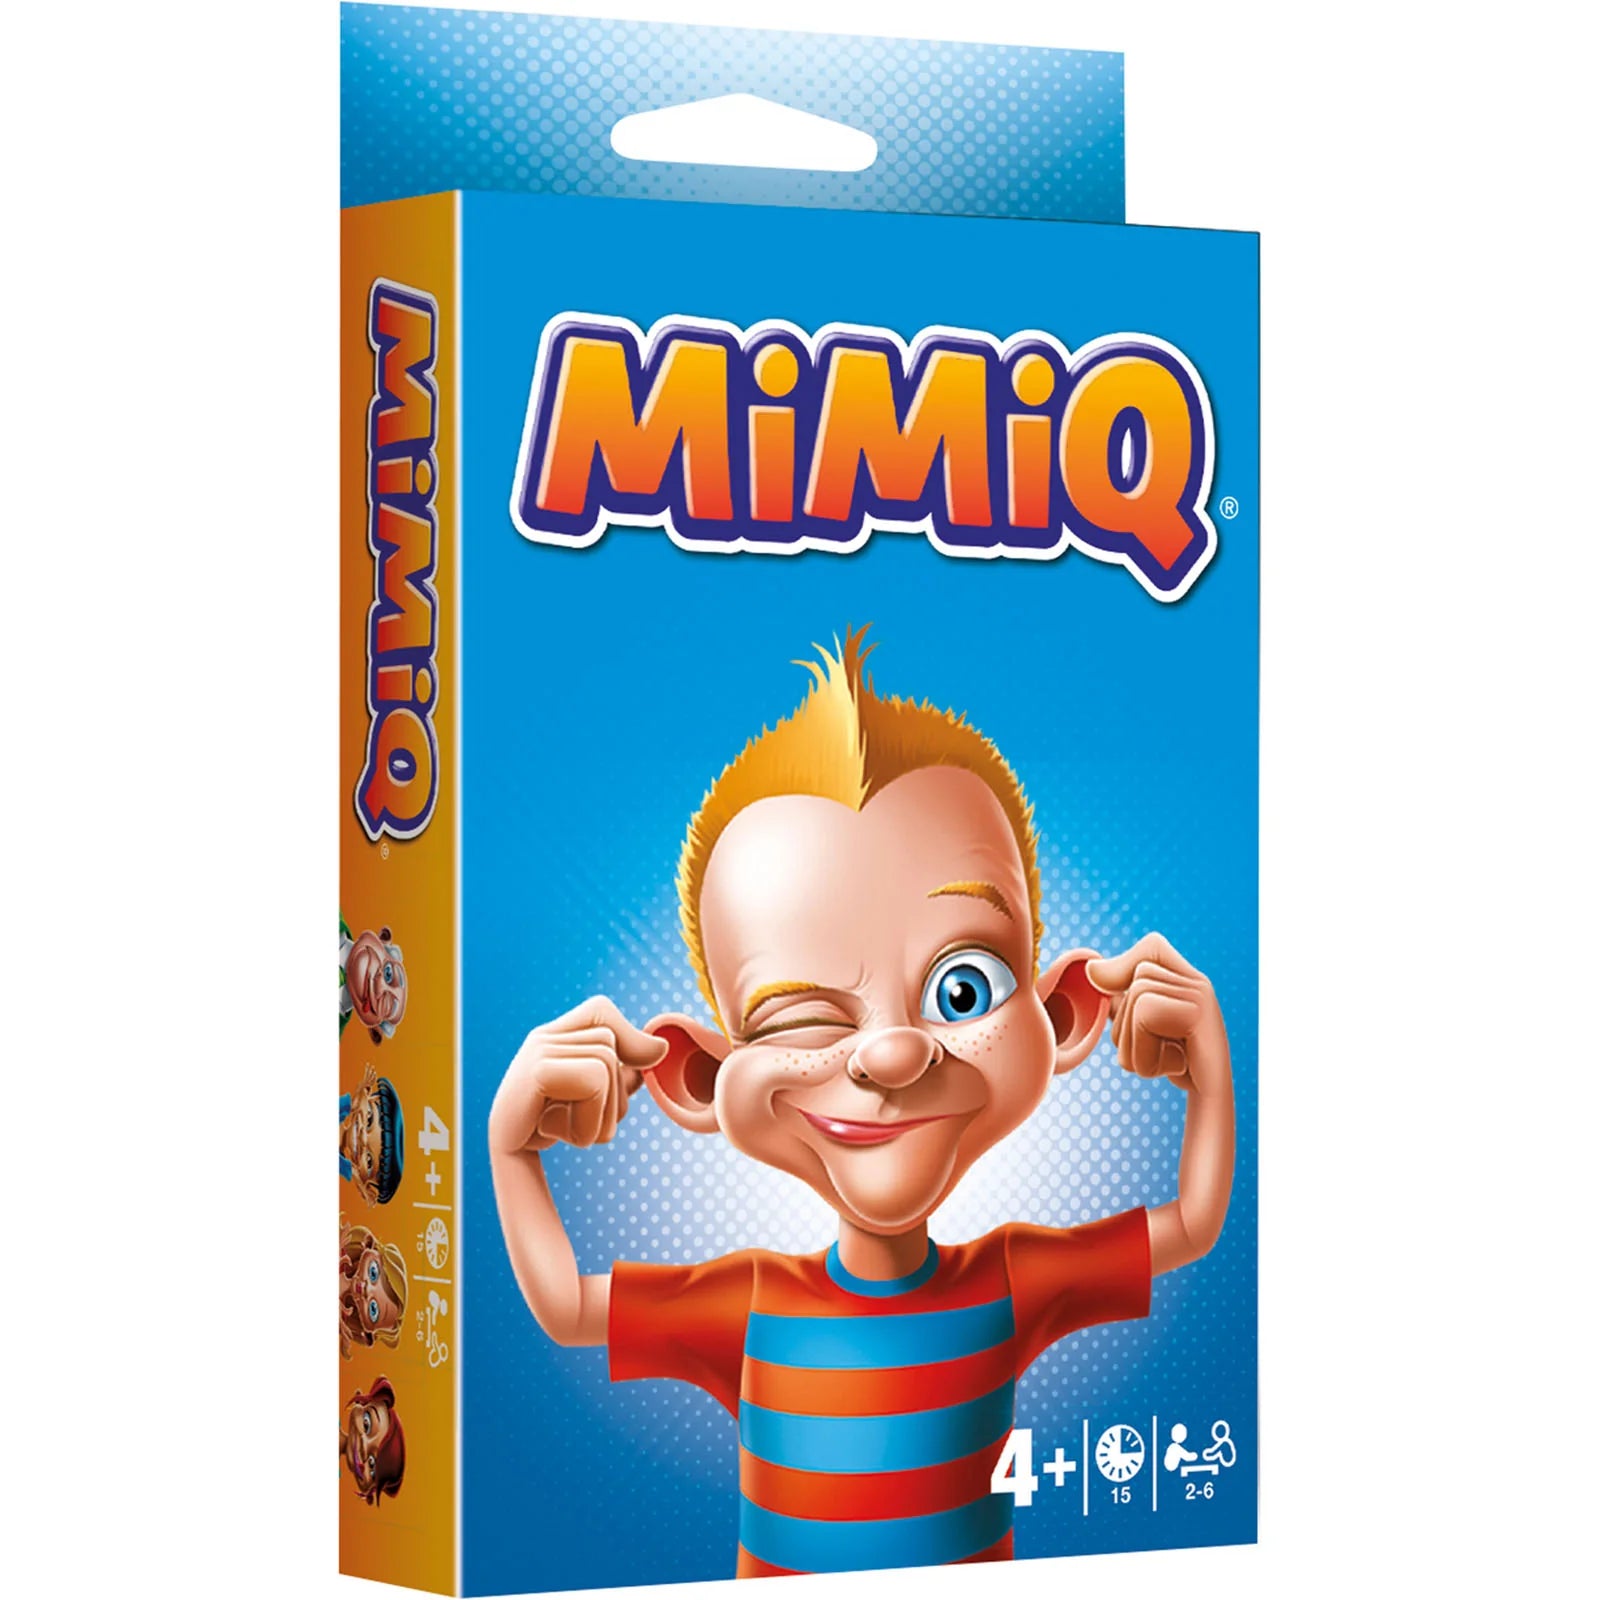 MimiQ Game